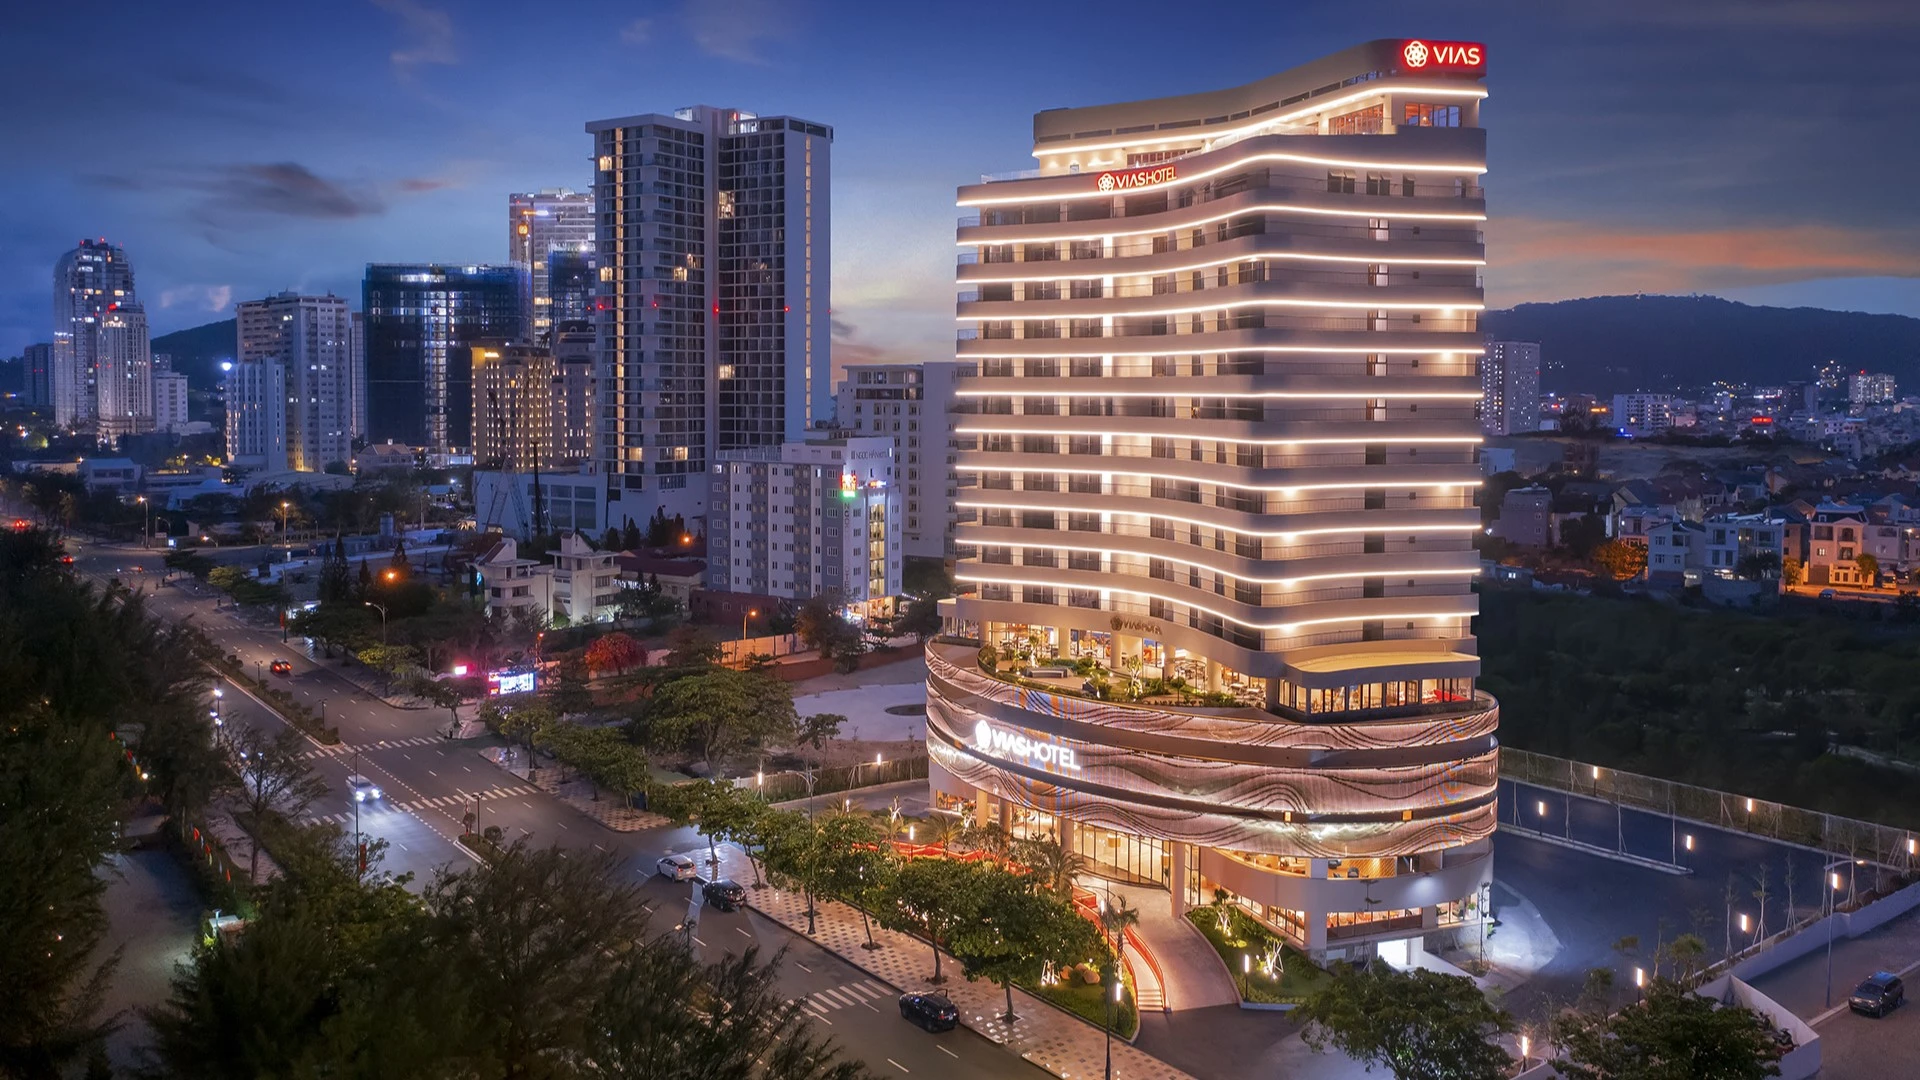 Vias Hotel Vũng Tàu nhận giải thưởng “Luxury Rooftop View Hotel – Global Winner 2022”